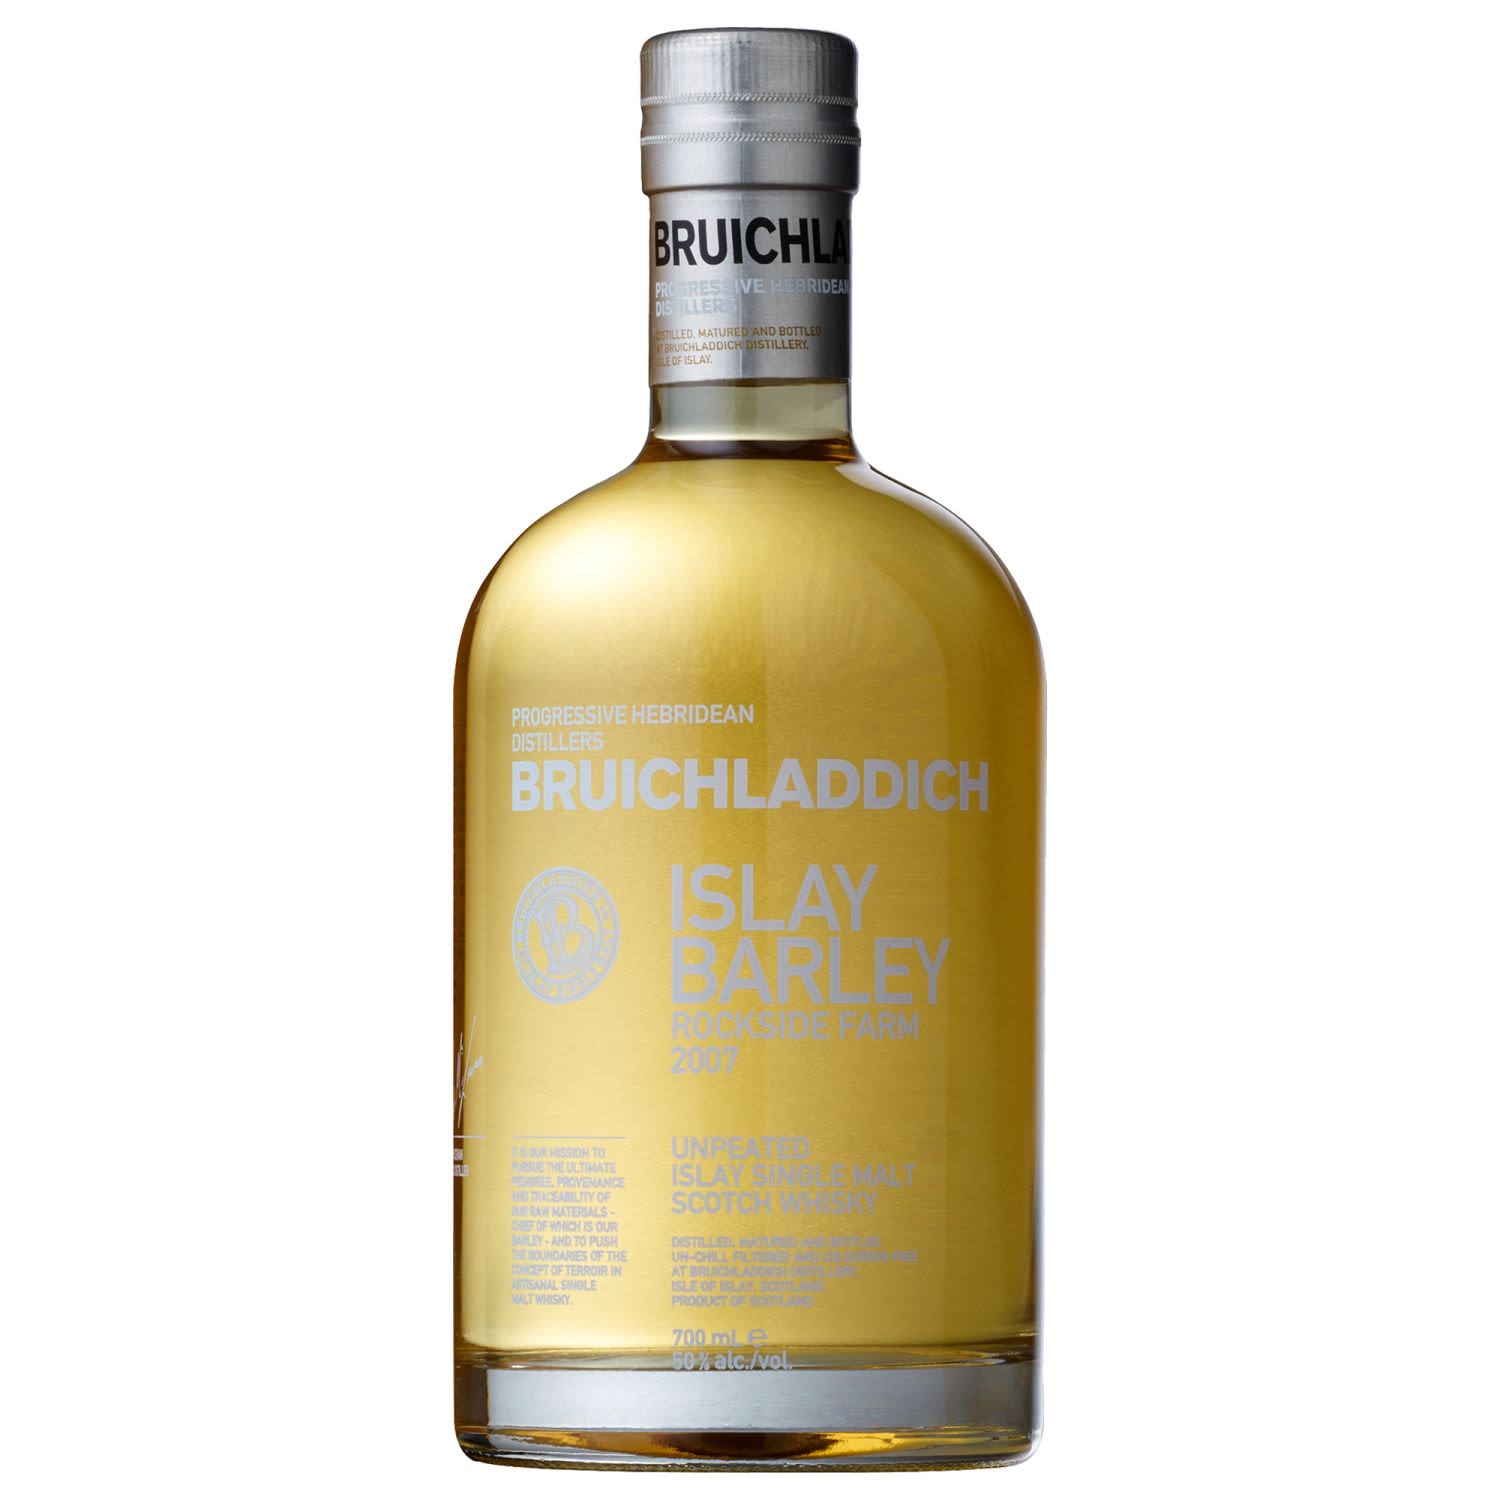 Bruichladdich Islay Barley Single Malt Scotch Whisky 2007 700mL Bottle